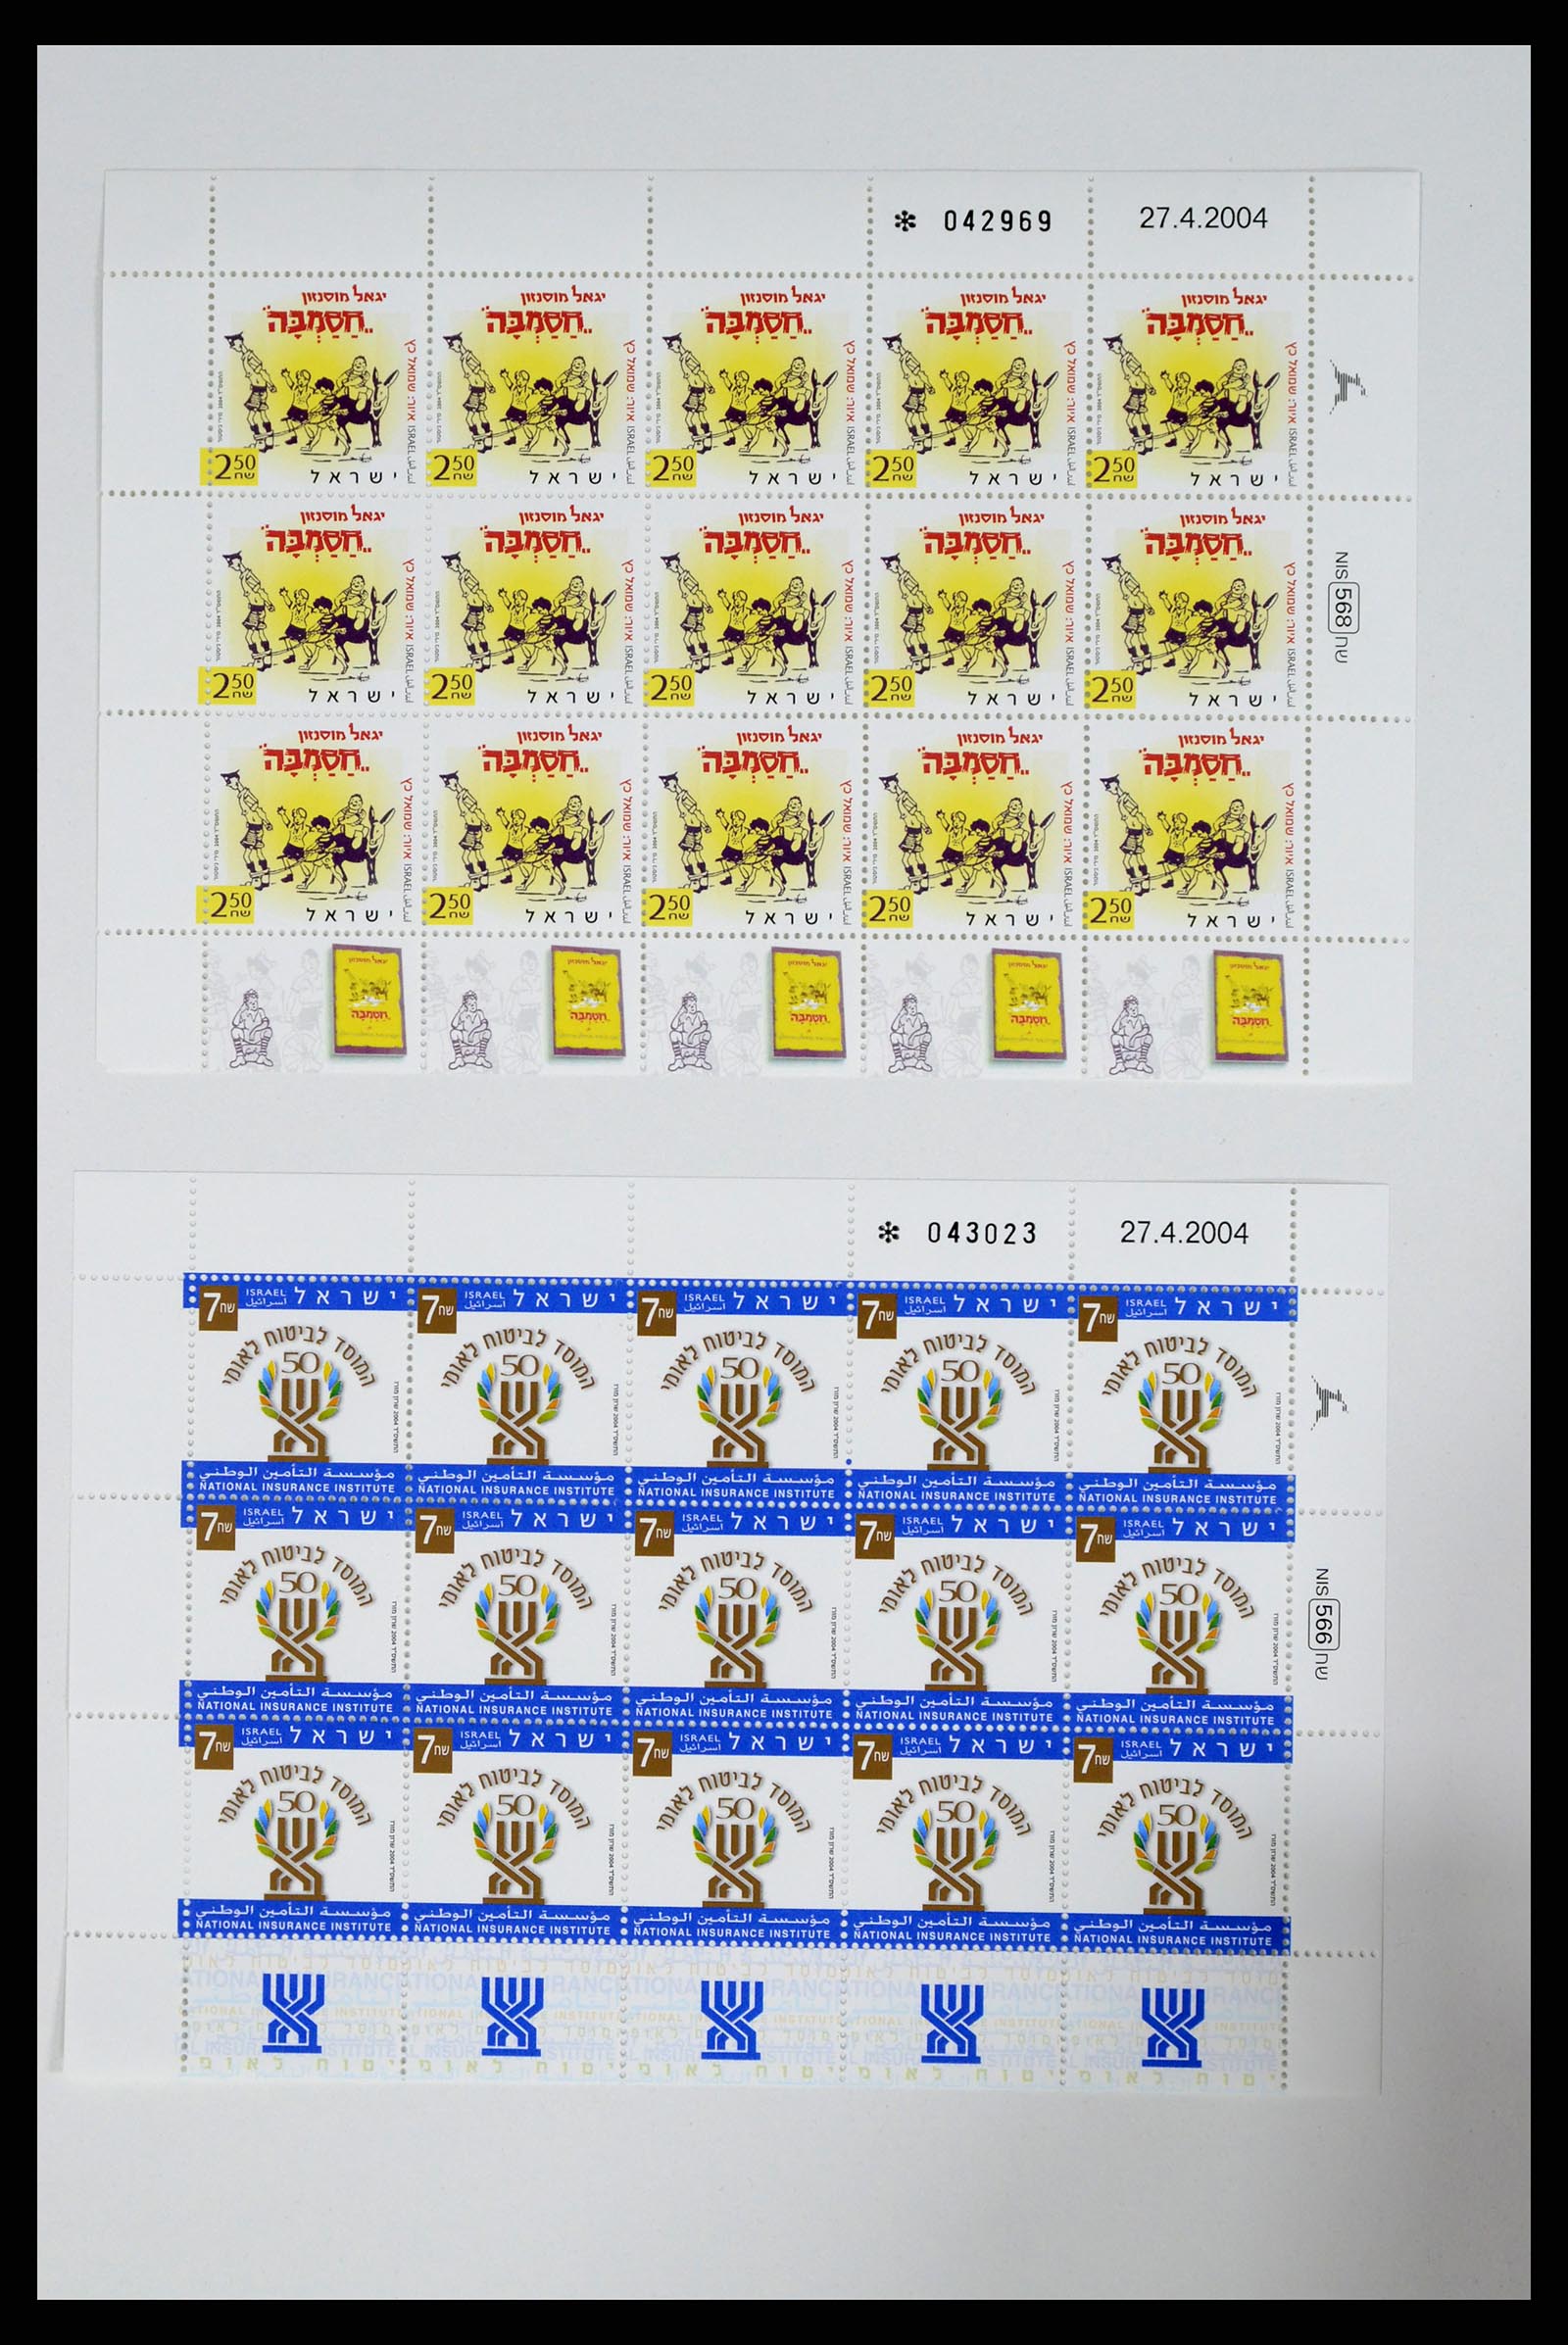 37779 337 - Postzegelverzameling 37779 Israël velletjes 1986-2009.